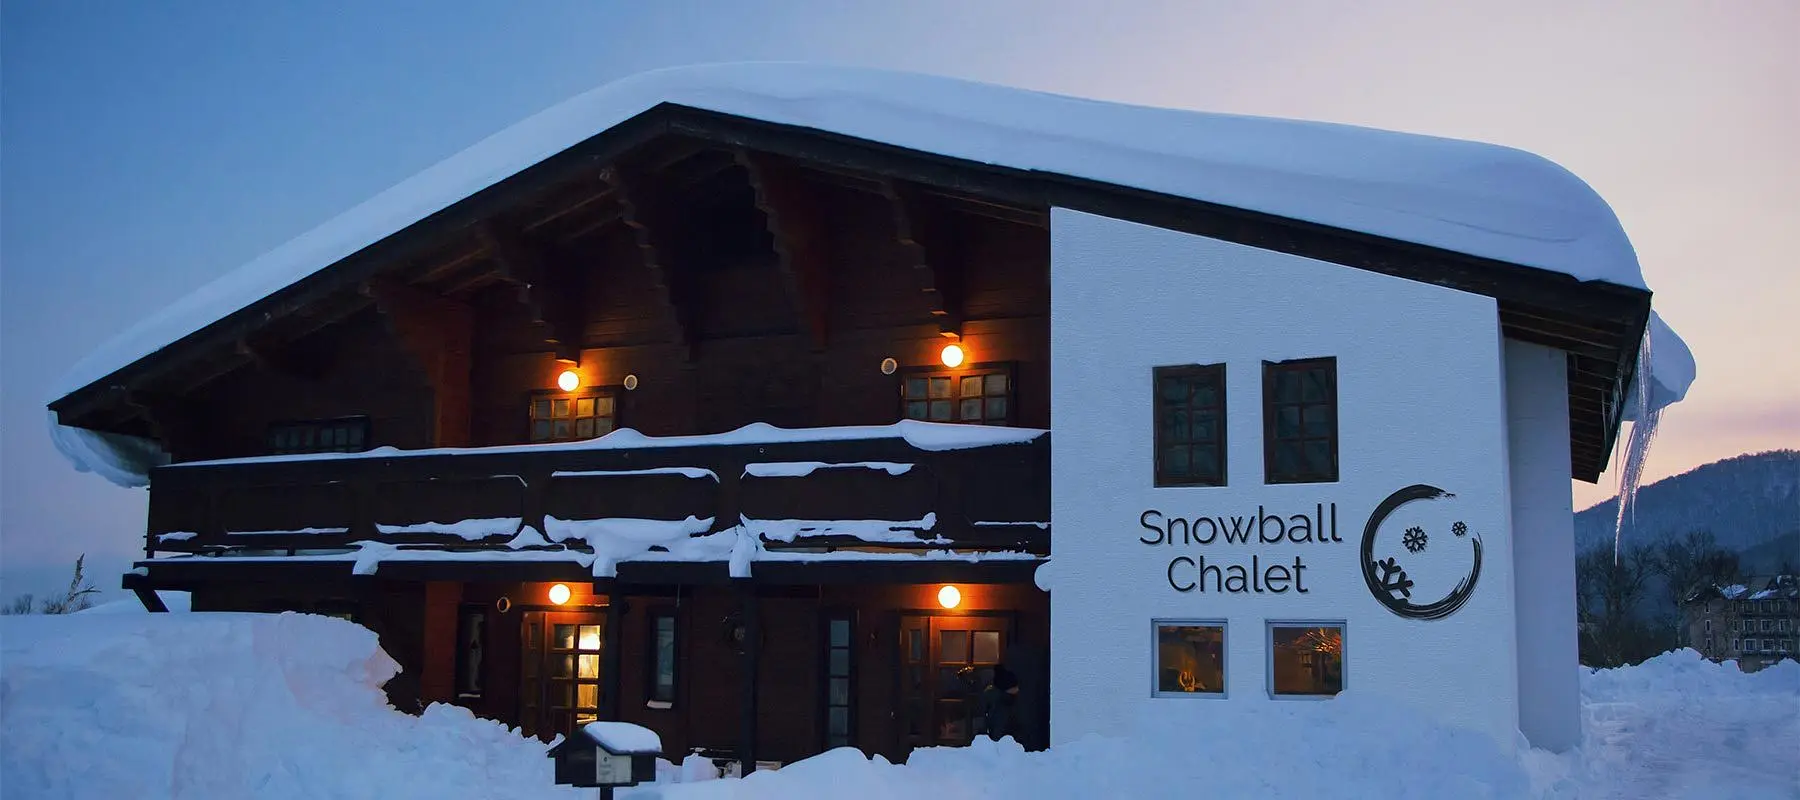 Snowball Chalet Logo Wall